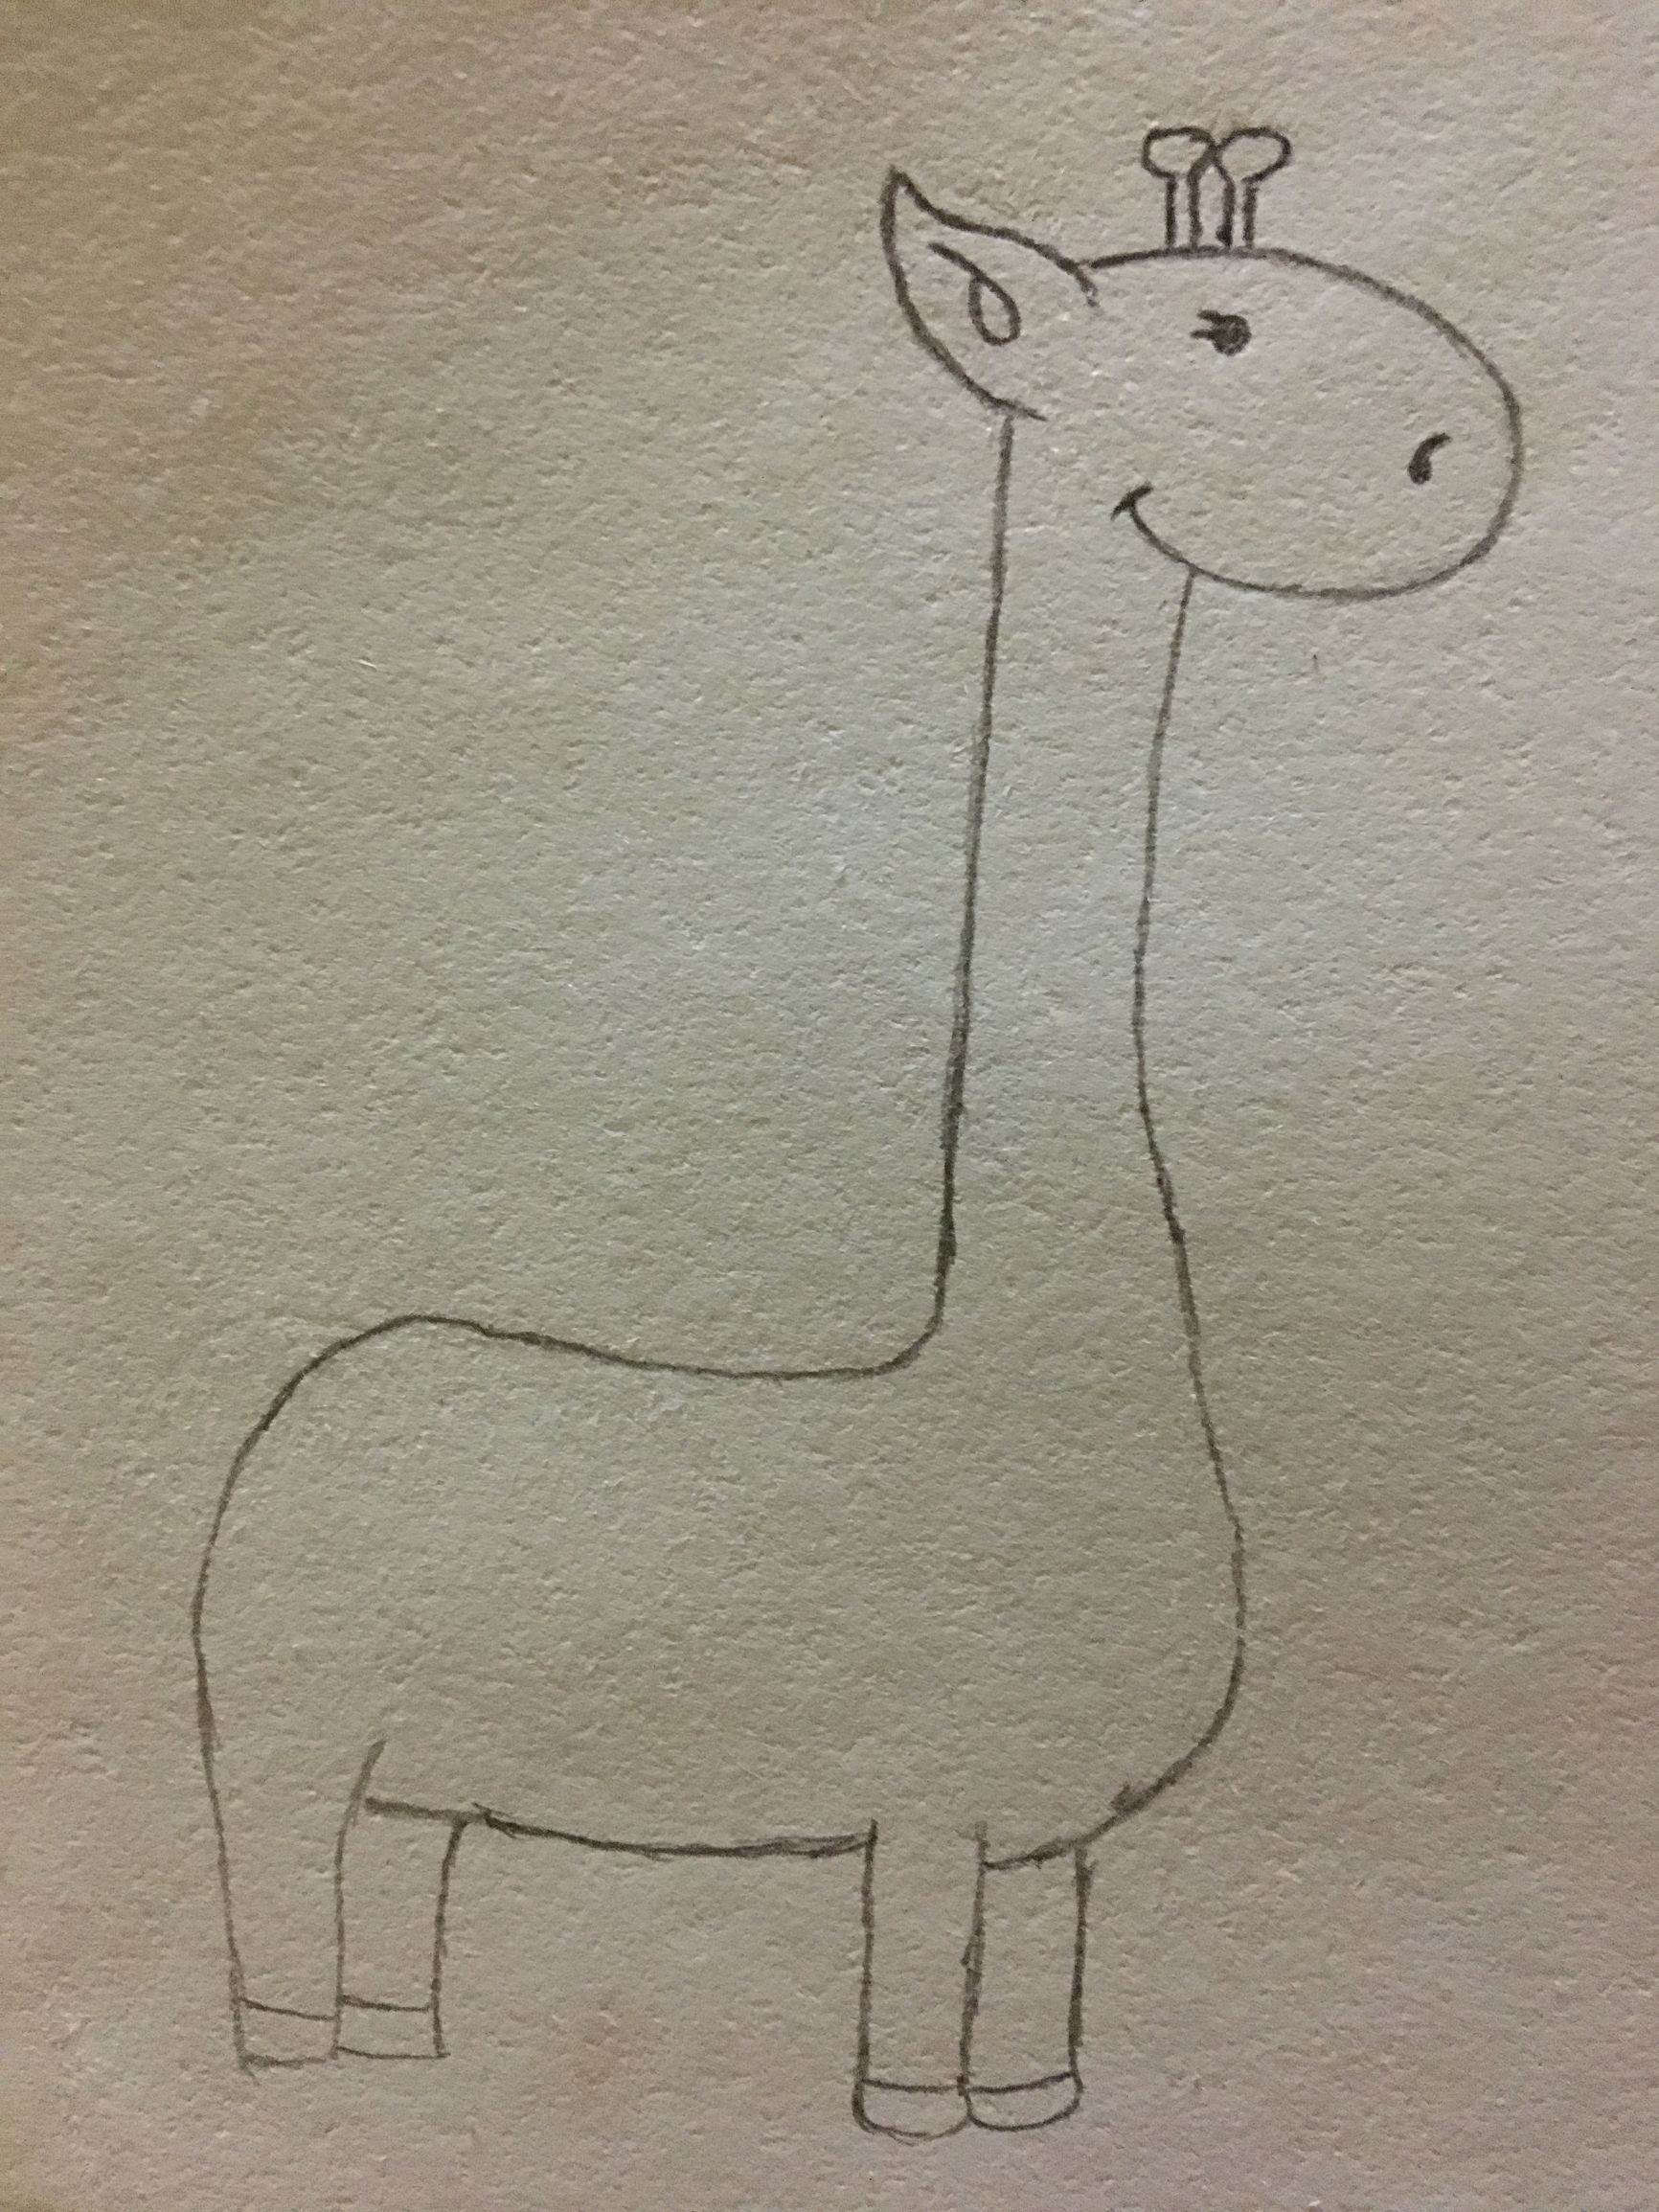 简笔画可爱长颈鹿的教程（我的校园简笔画图片大全） - 有点网 - 好手艺